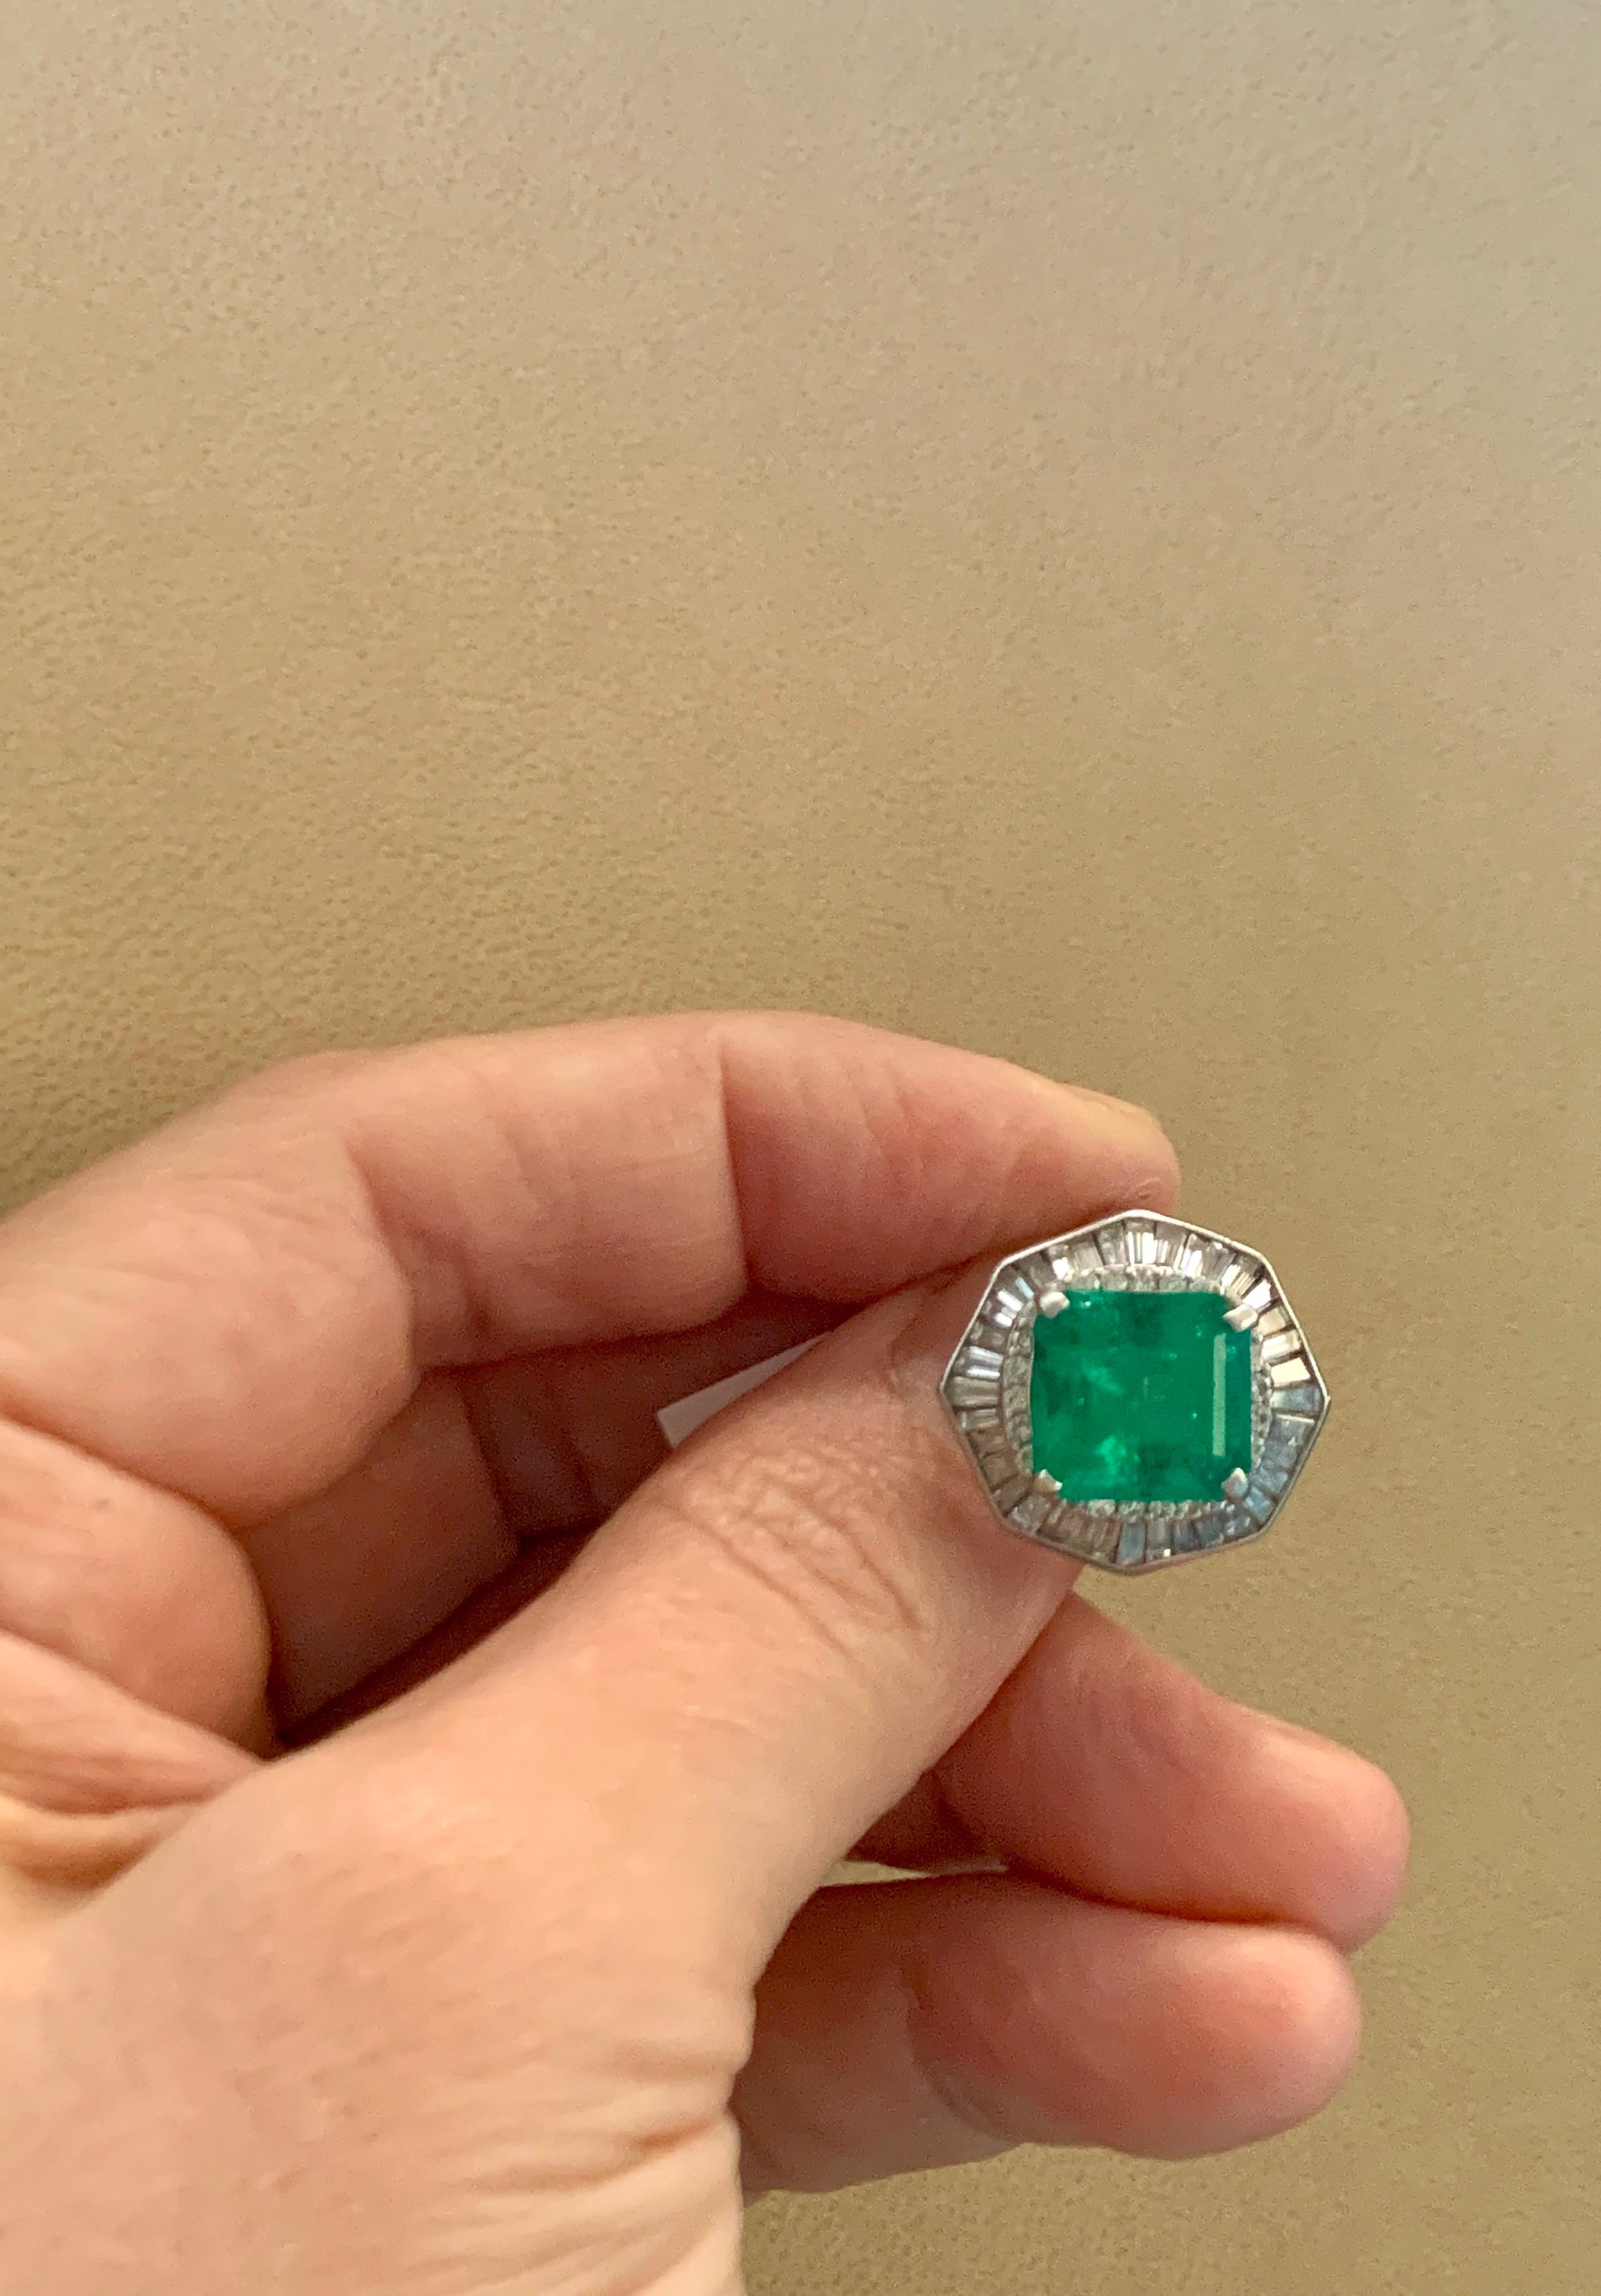 2.4 carat emerald cut diamond